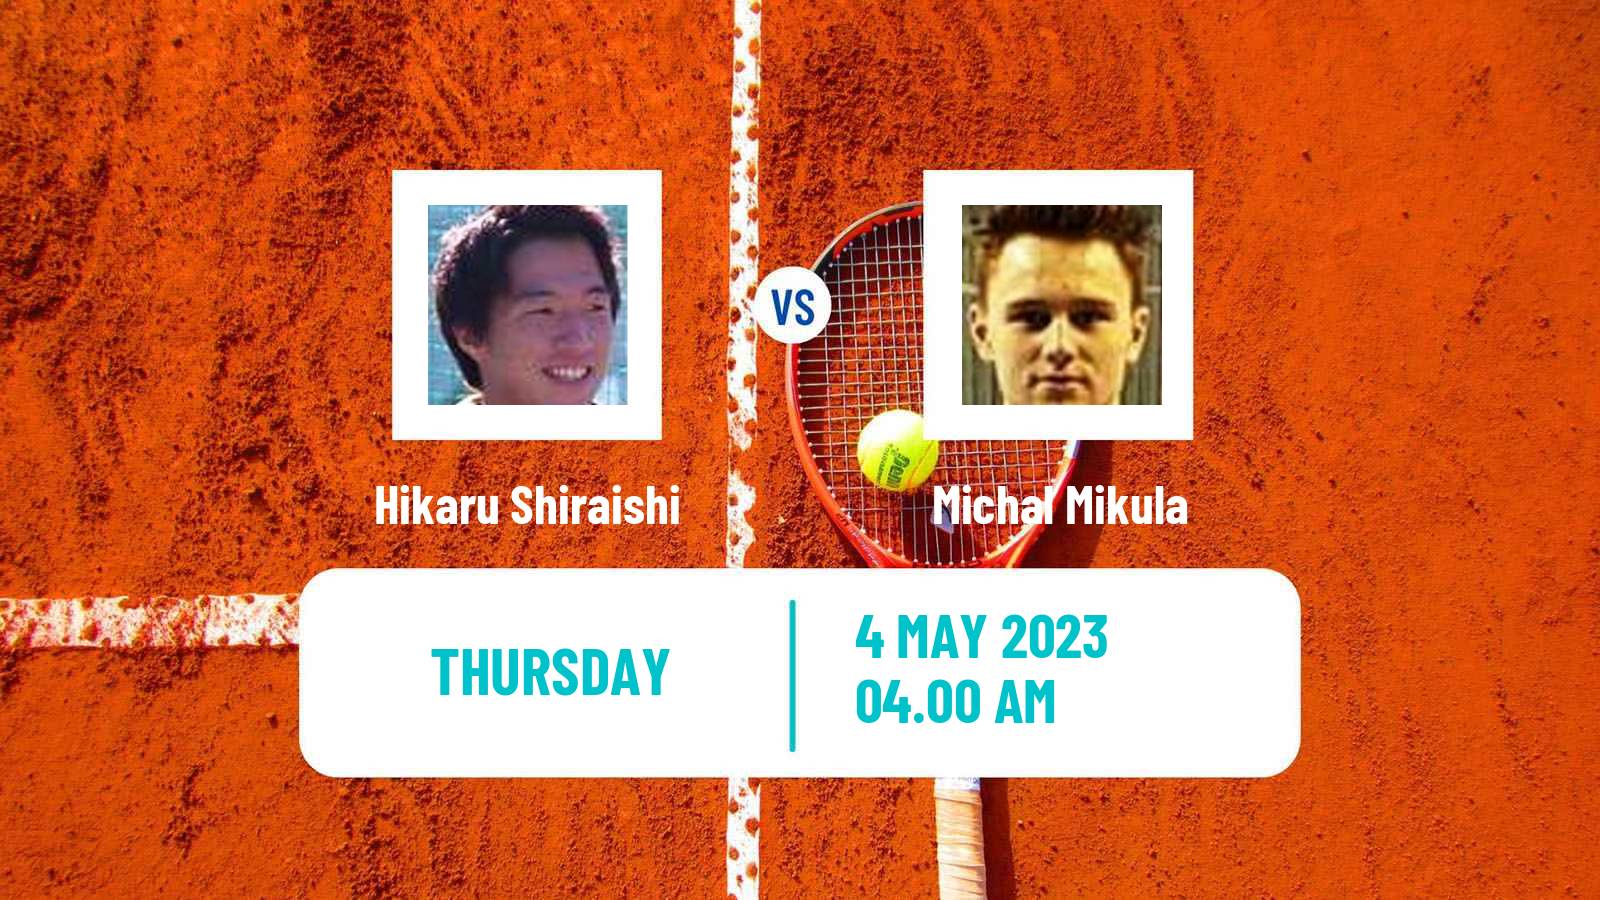 Tennis ITF Tournaments Hikaru Shiraishi - Michal Mikula